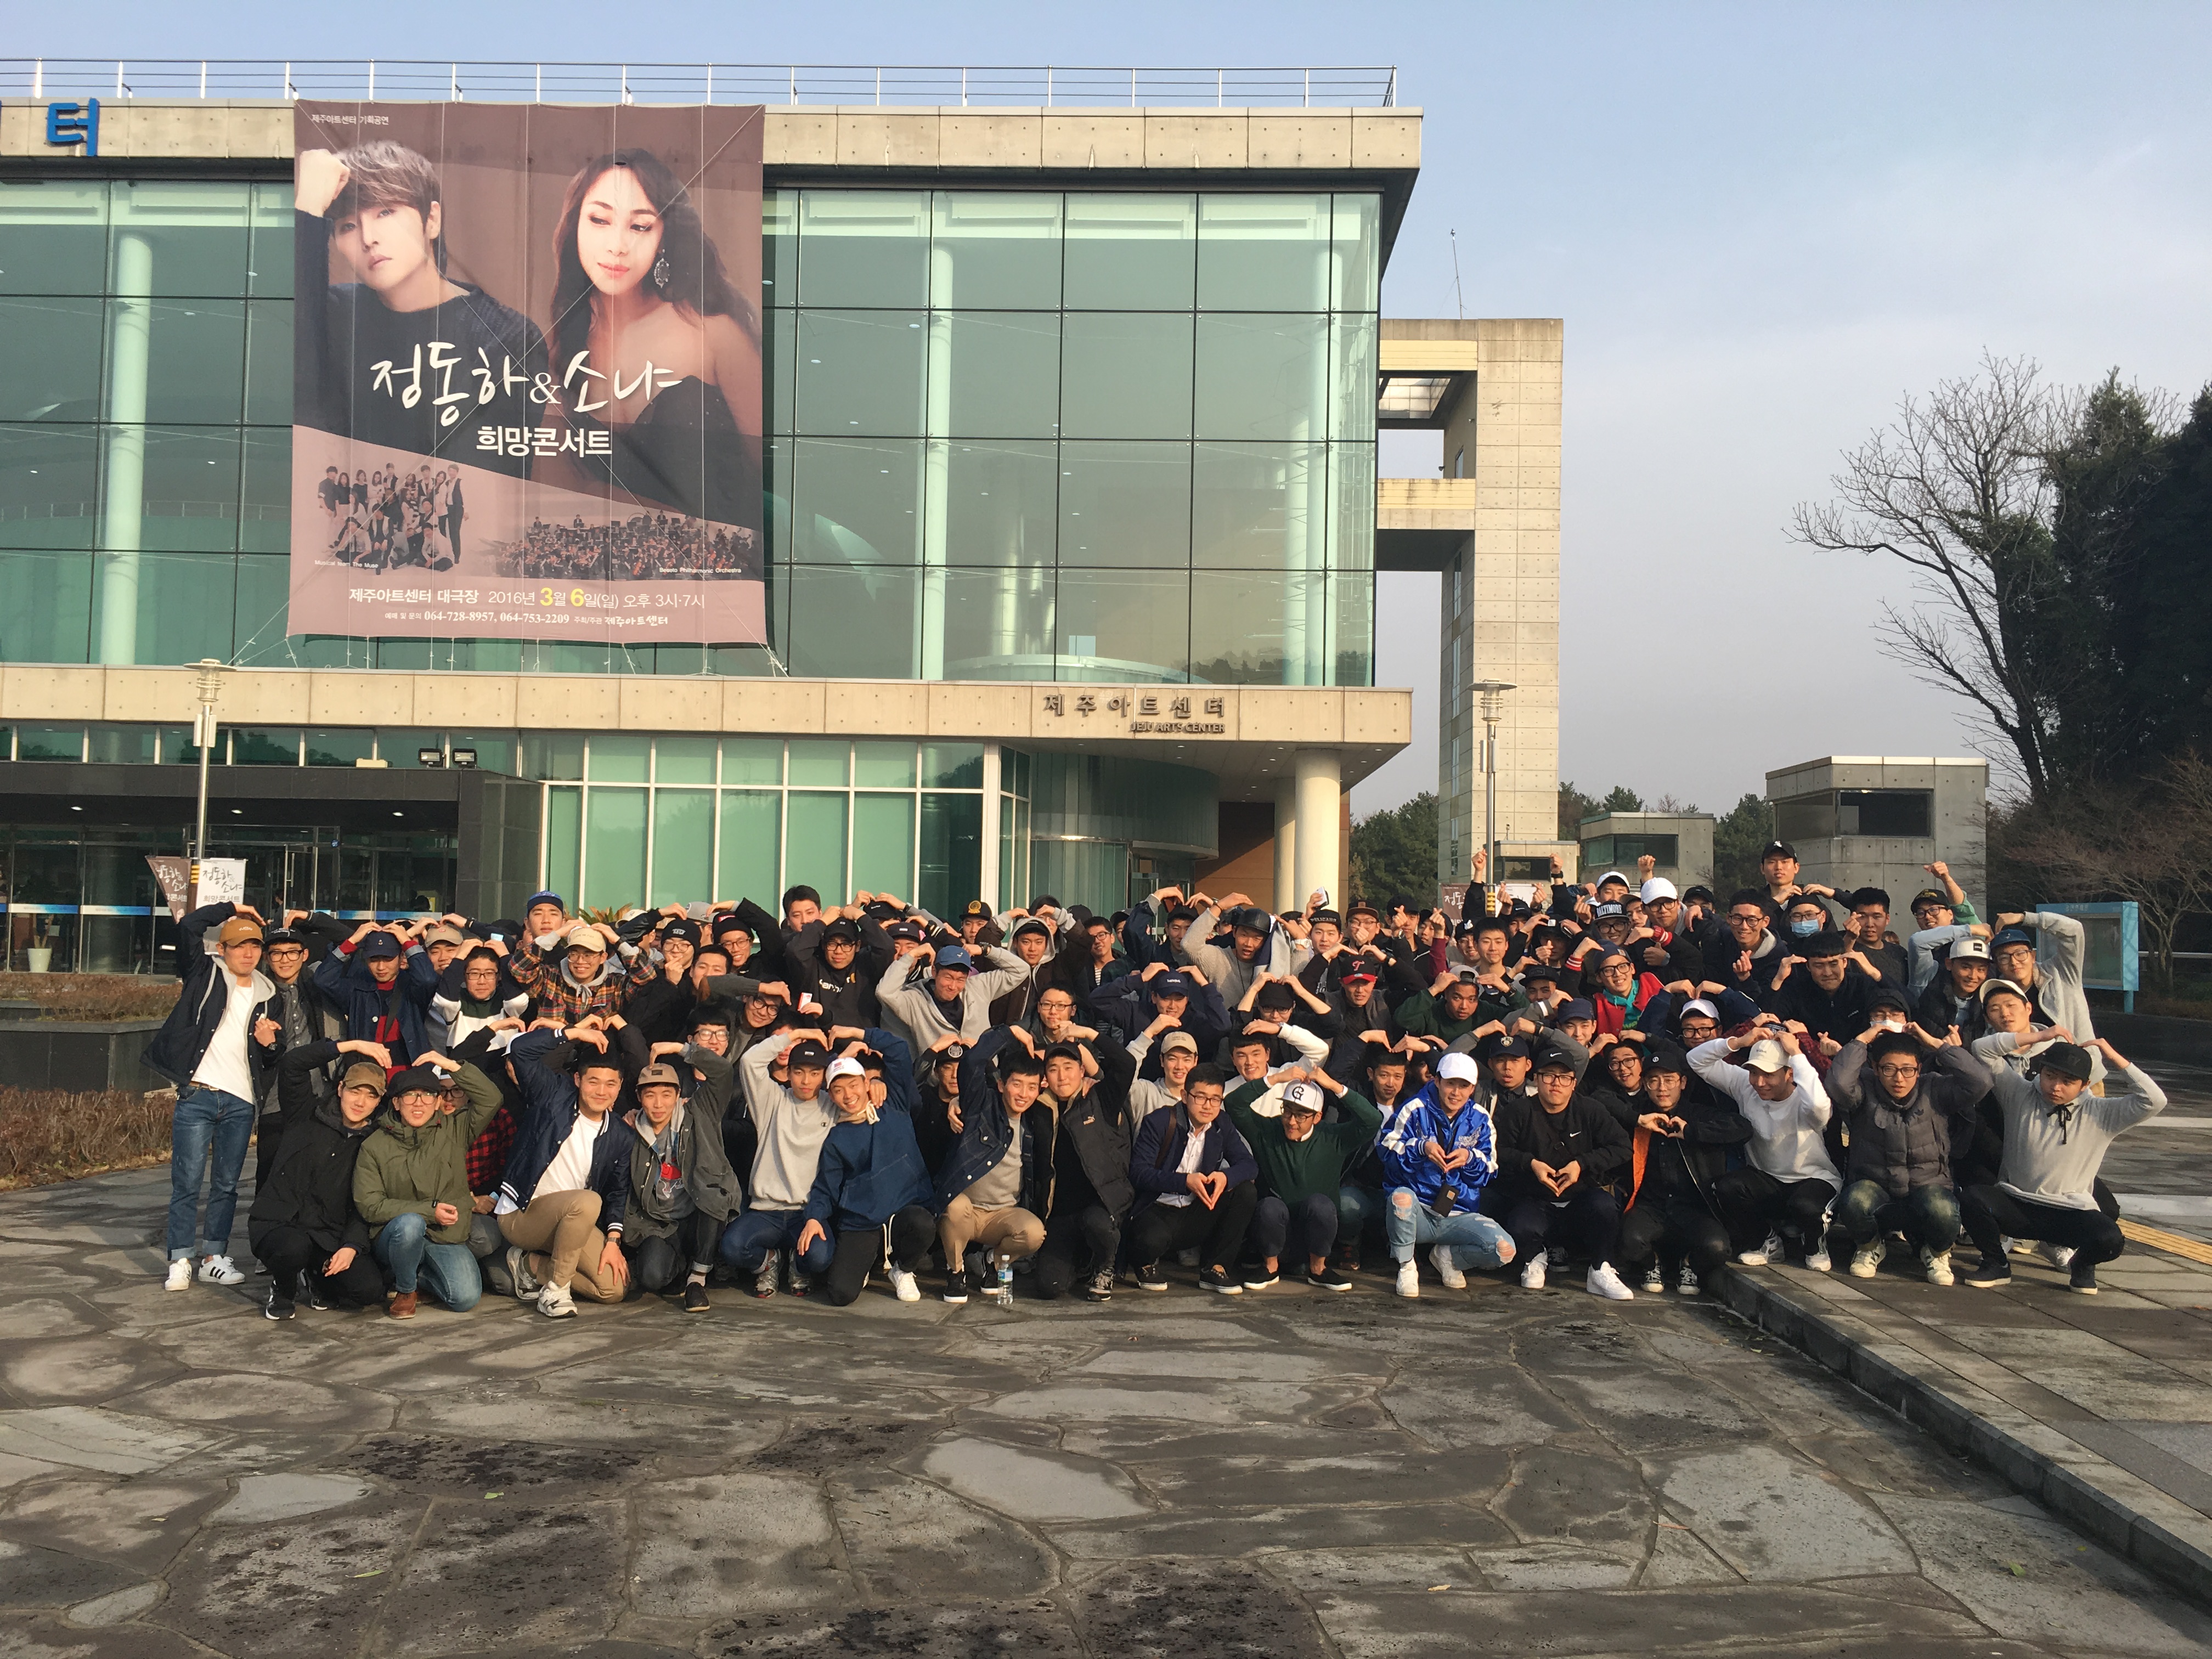 제주해안경비단 의무경찰, 정동하&소냐 희망콘서트 관람